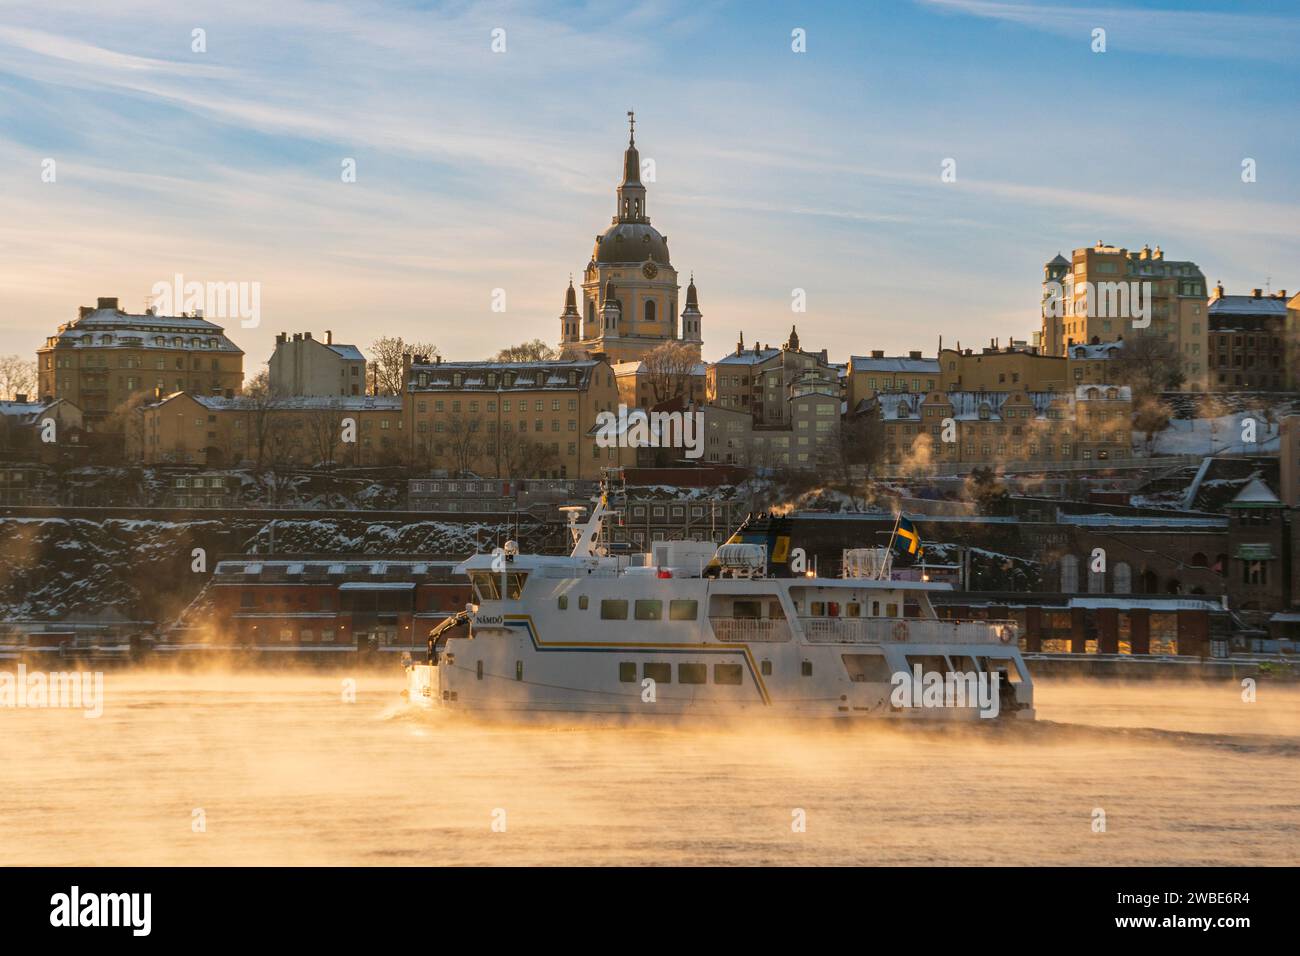 Ein Pendlerboot, das an einem sehr kalten Morgen an der Kirche Katarina in Stockholm vorbeifährt, wo das Meer raucht und Schnee und Frost sichtbar sind Stockfoto